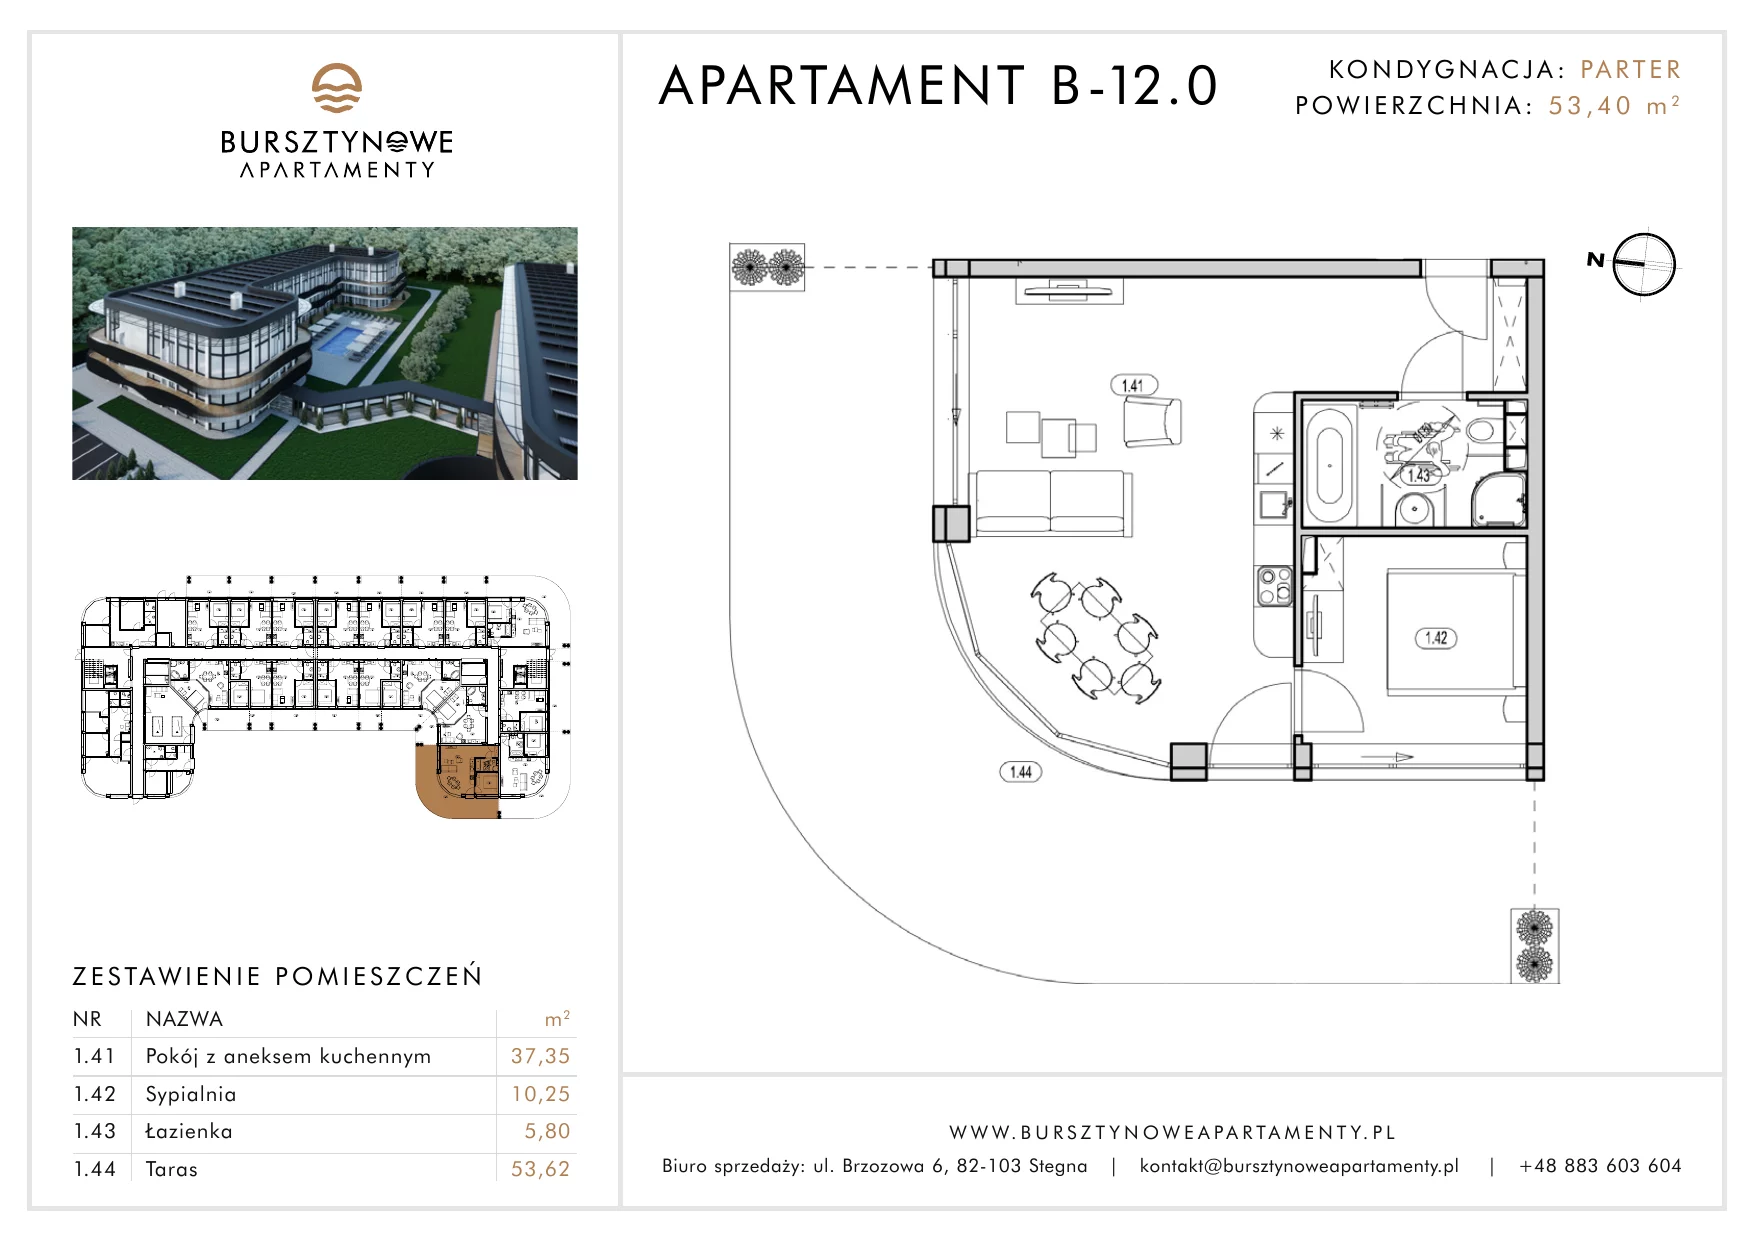 Apartament inwestycyjny 53,40 m², parter, oferta nr B-12.0, Bursztynowe Apartamenty, Stegna, ul. Brzozowa 6